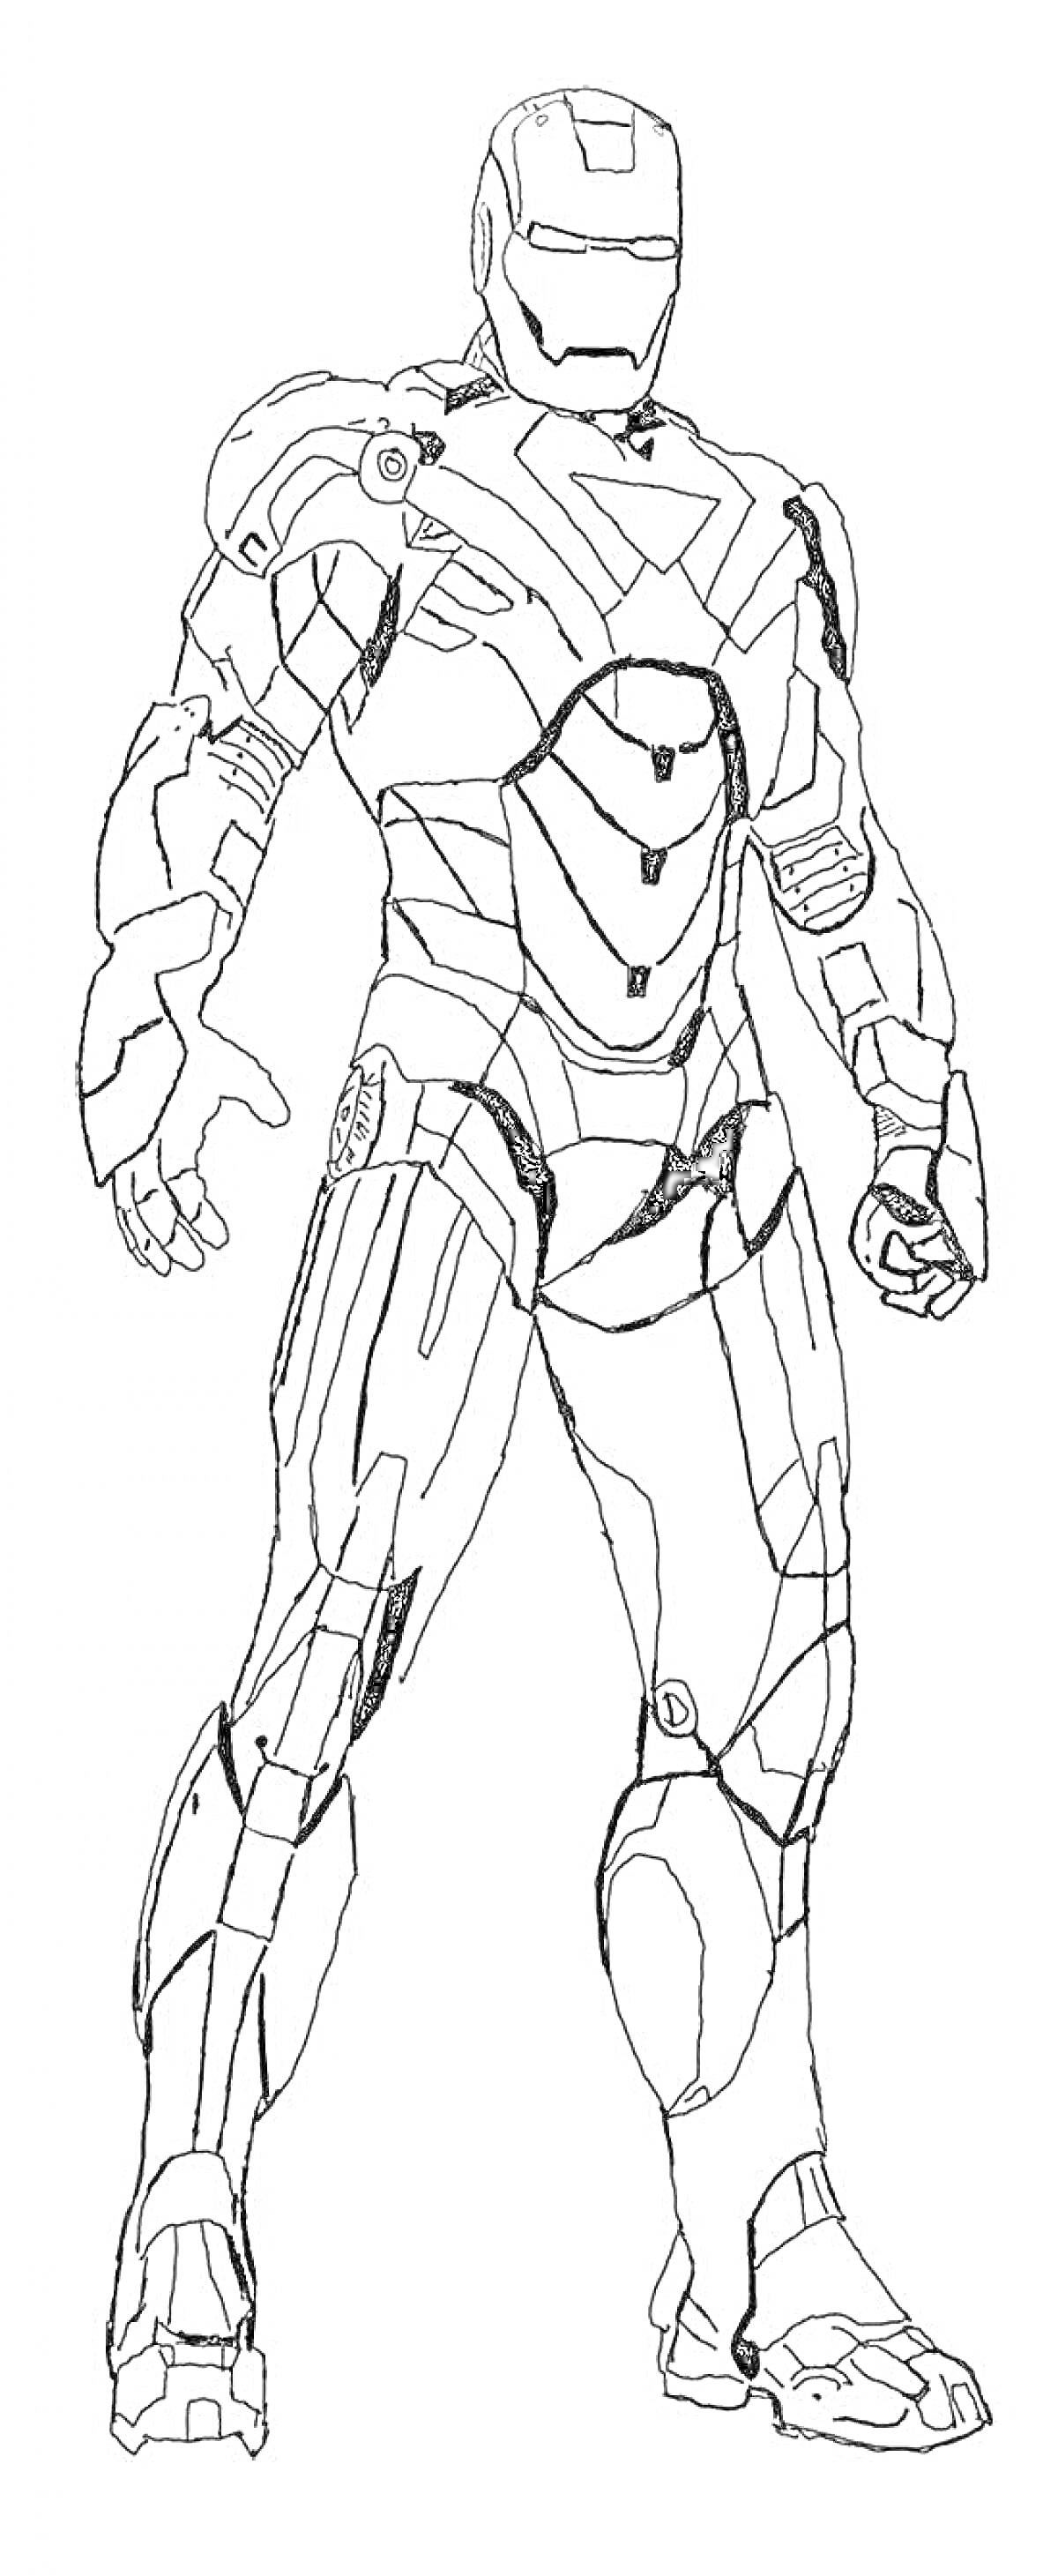 Раскраска Железный человек в костюме Mark L, стоящий в боевой стойке